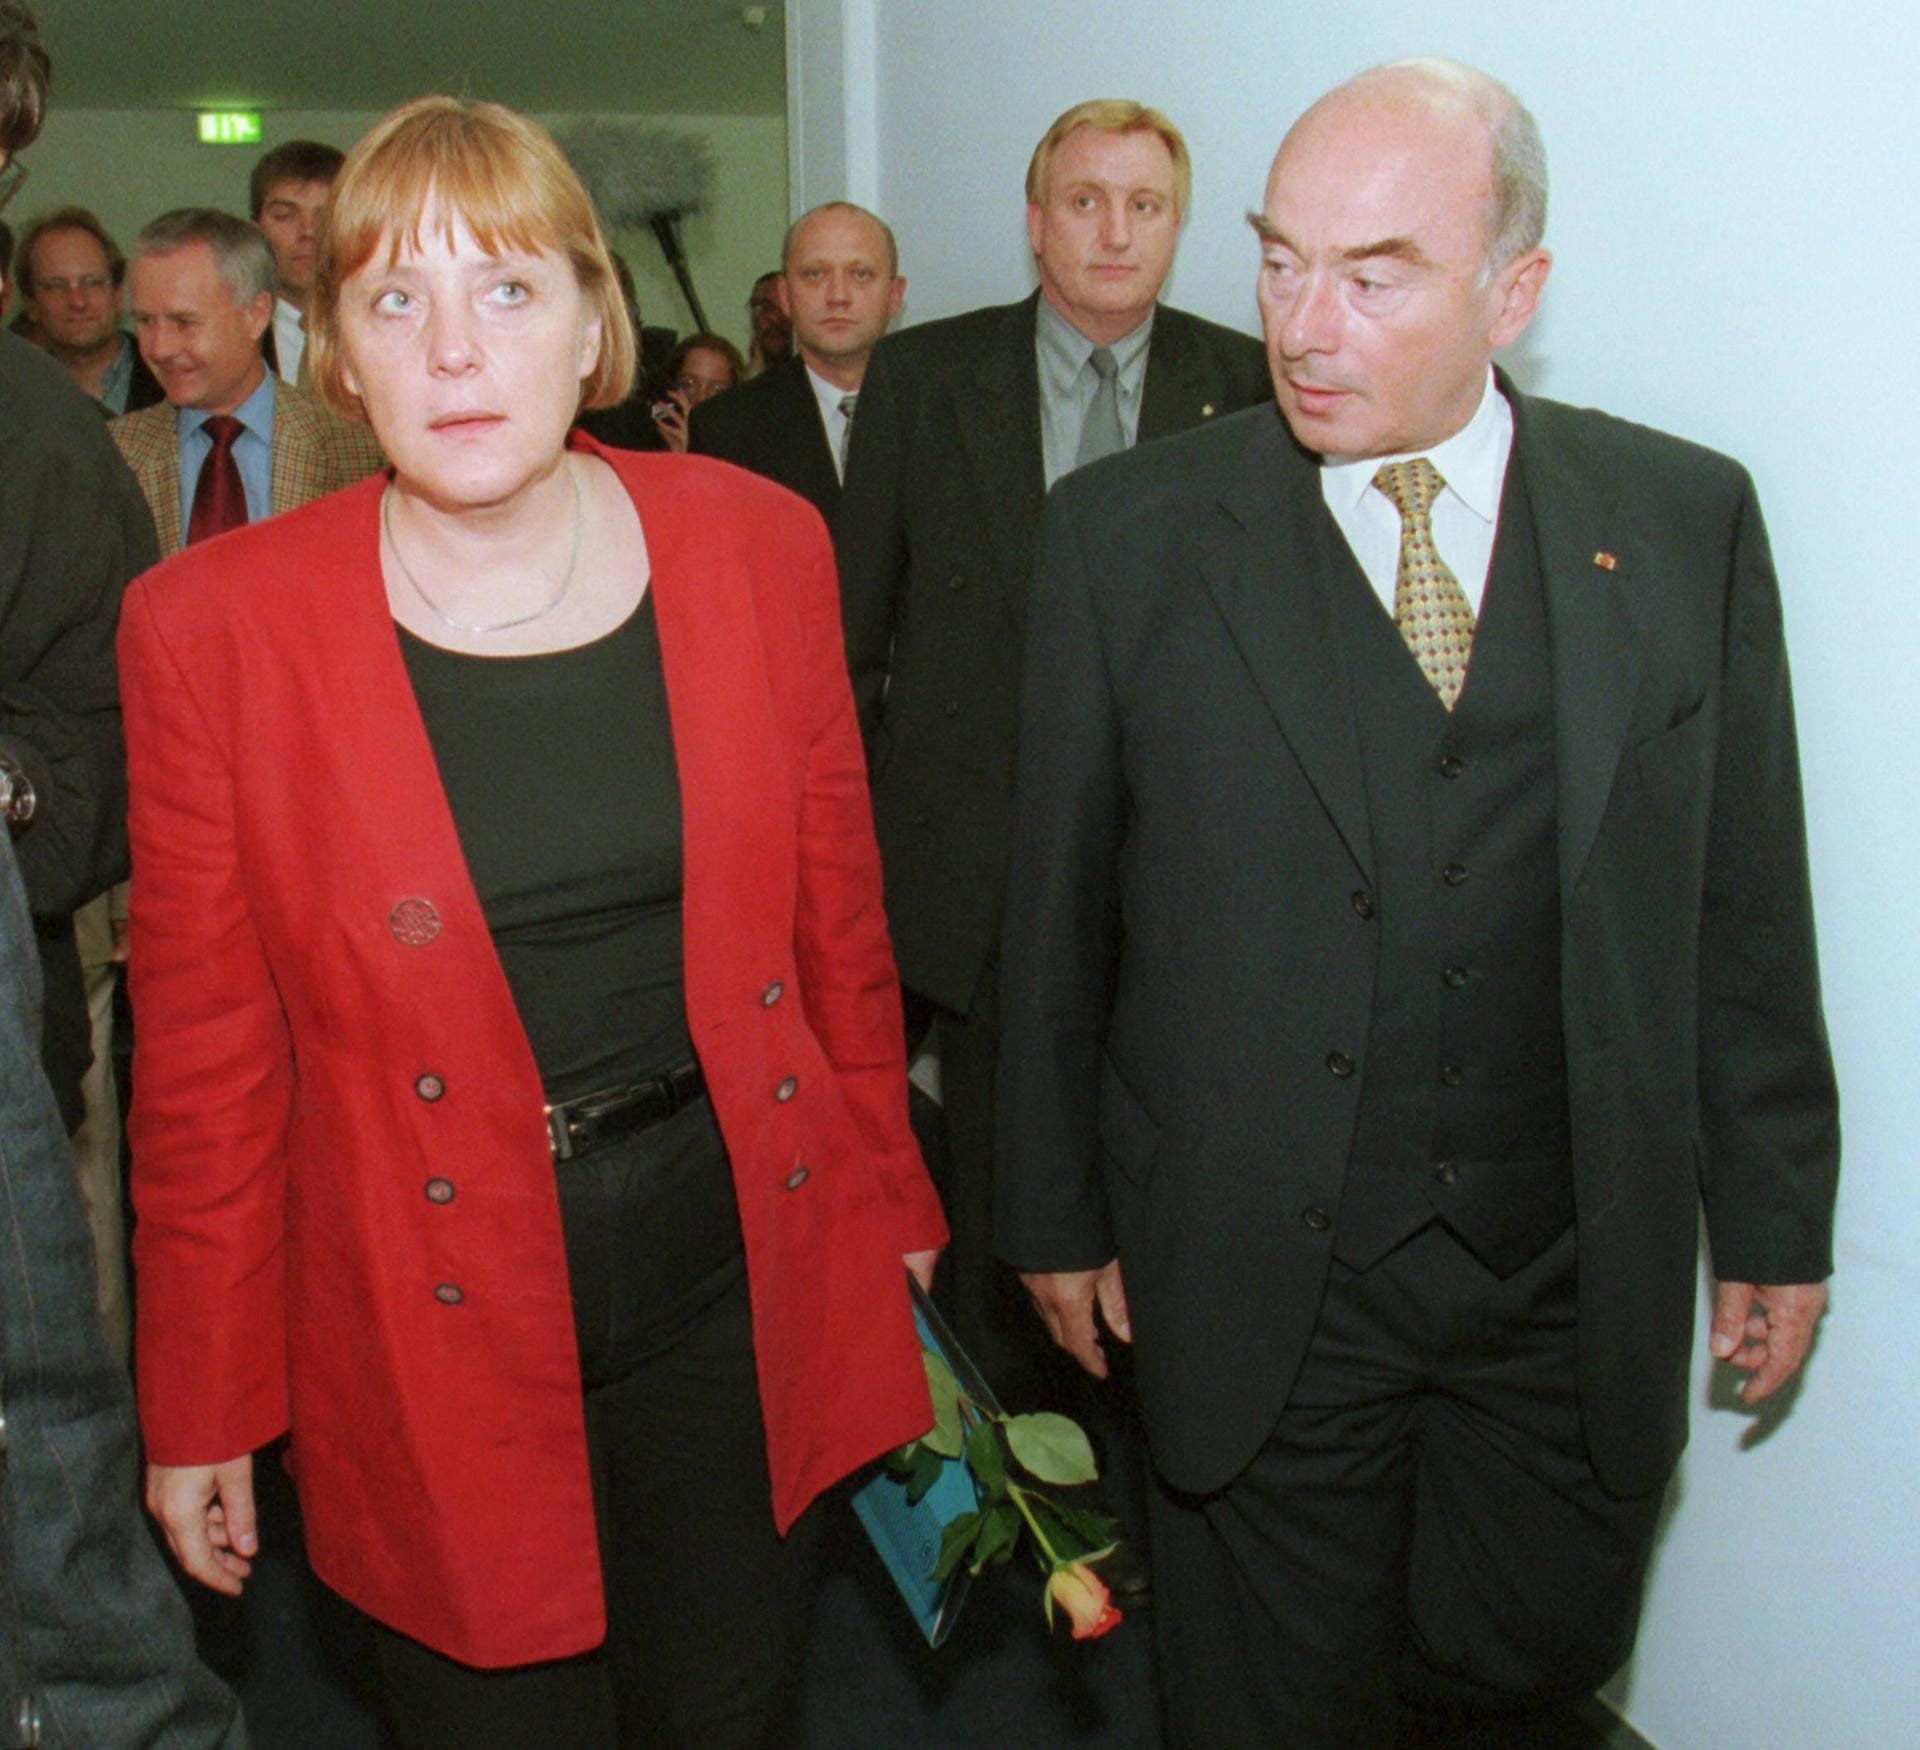 Juli 2000: Die damalige CDU-Vorsitzende Angela Merkel neben dem Innenminister Brandenburgs. Schönbohm wurde 1999 als stellvertretender Ministerpräsident des Bundeslandes gewählt.